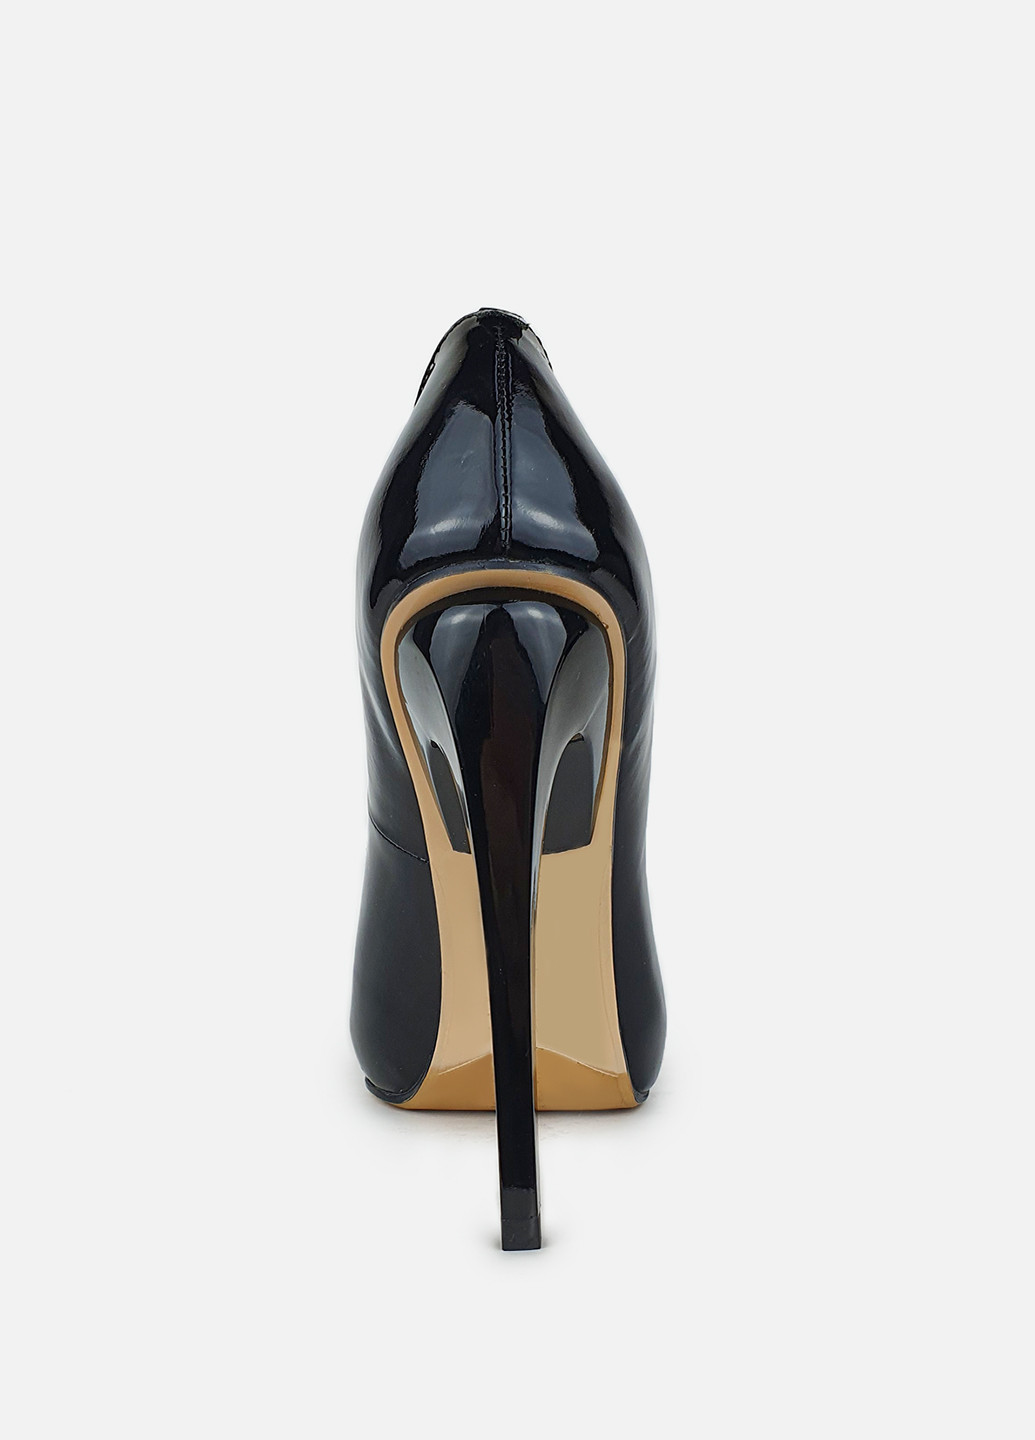 Туфли женские осенние на каблуке кожаные черные Glossi